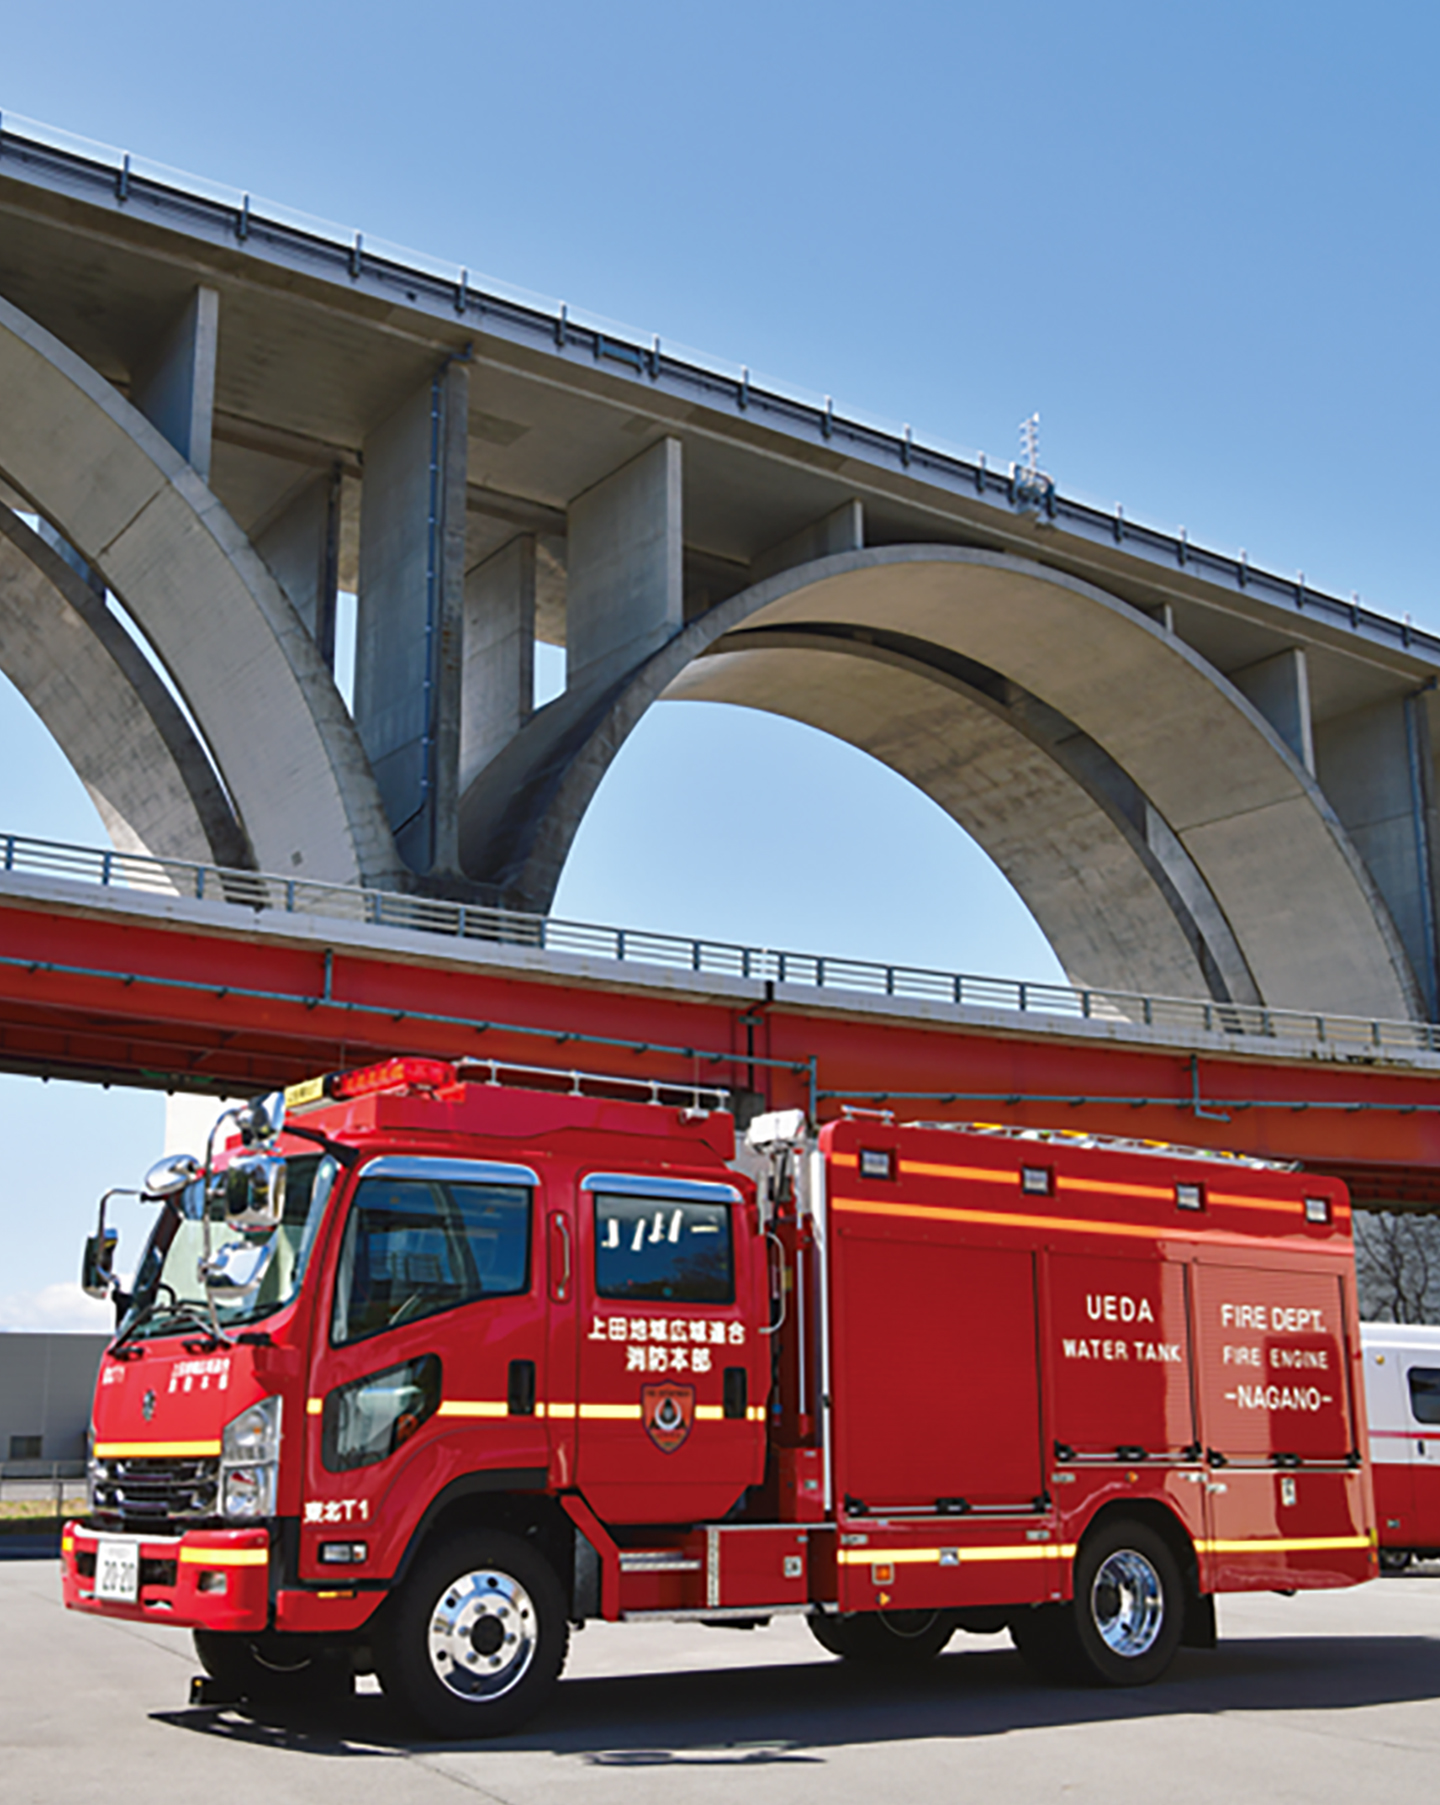 連続したアーチが美しい上信越道「上田ローマン橋」。こういった橋梁上での救助活動も想定して装備選択が行われている。